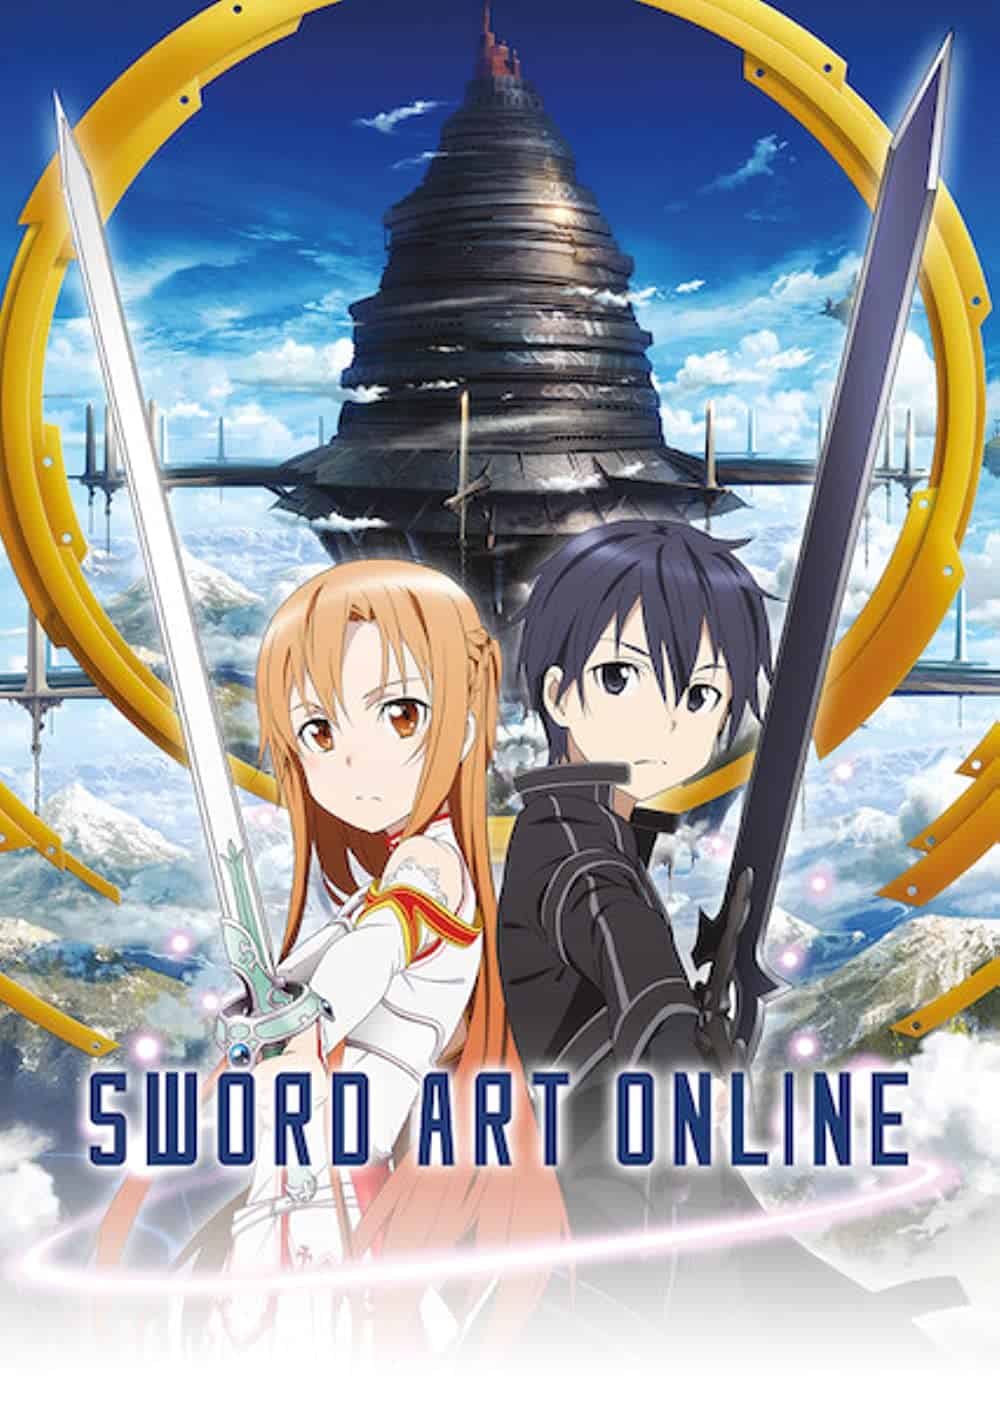 Sword Art Online hd poster